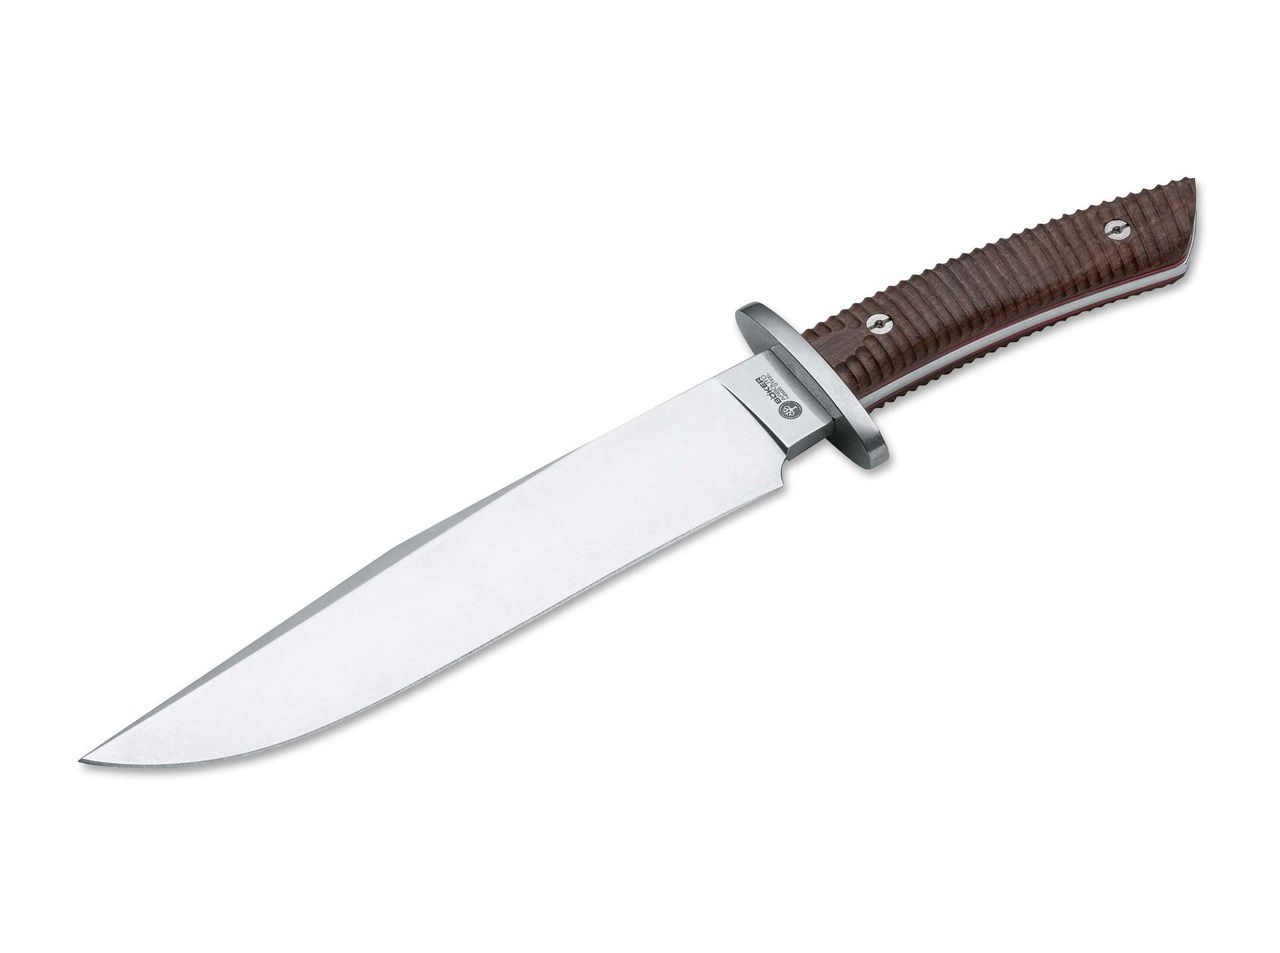 Arbolito El Gigante gro¤es Bowie Messer mit hochwertiger Lederscheide von BÖKER Arbolito